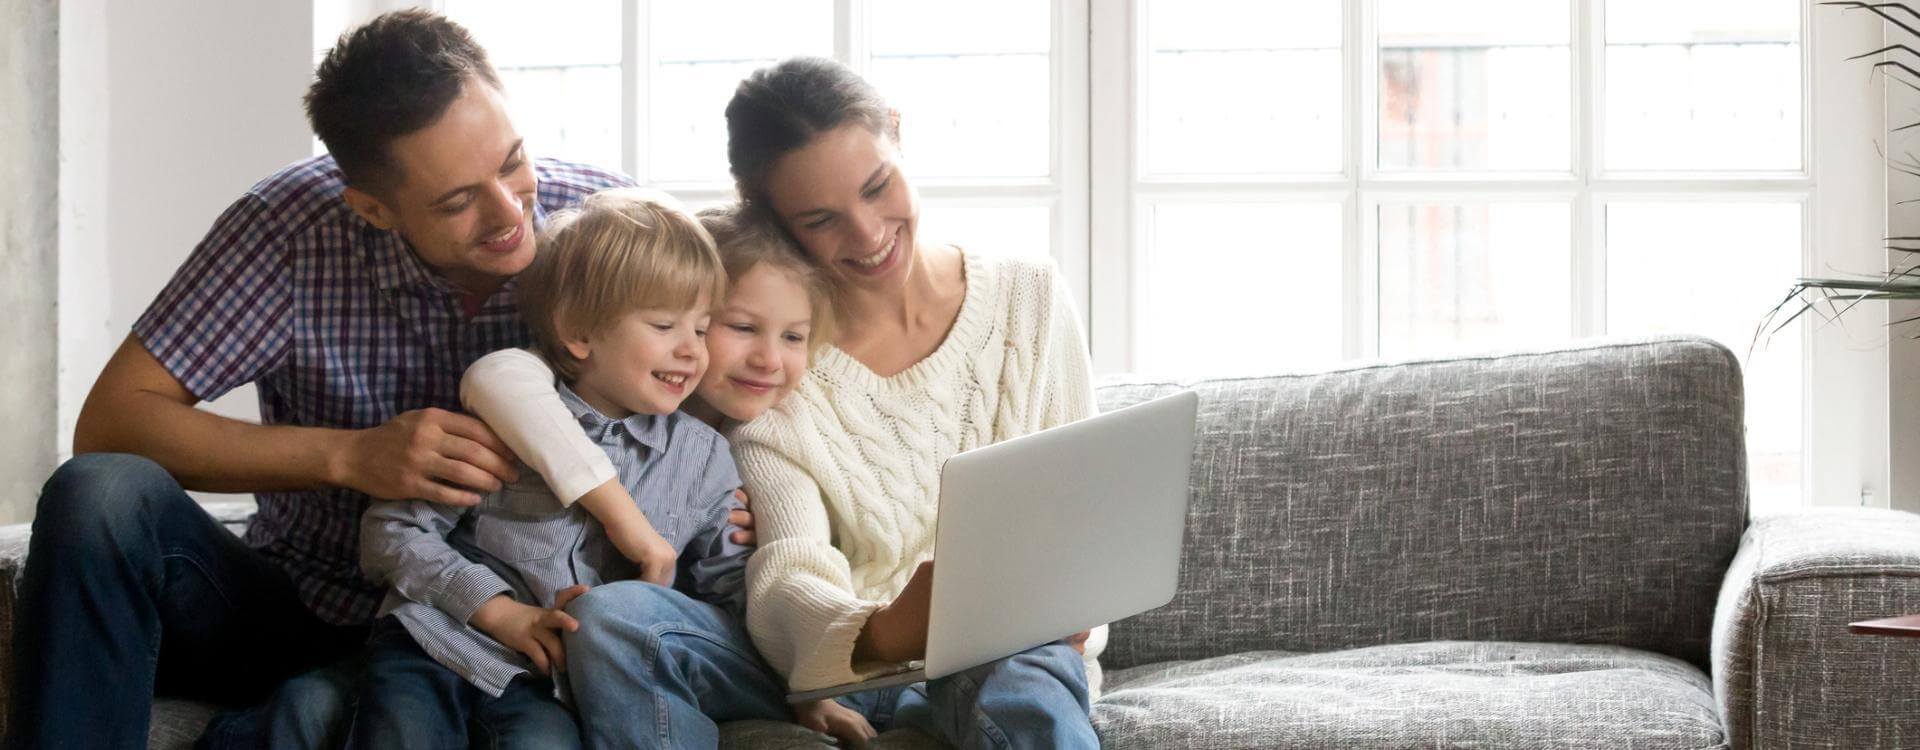 Rodzina oglądająca coś na laptopie